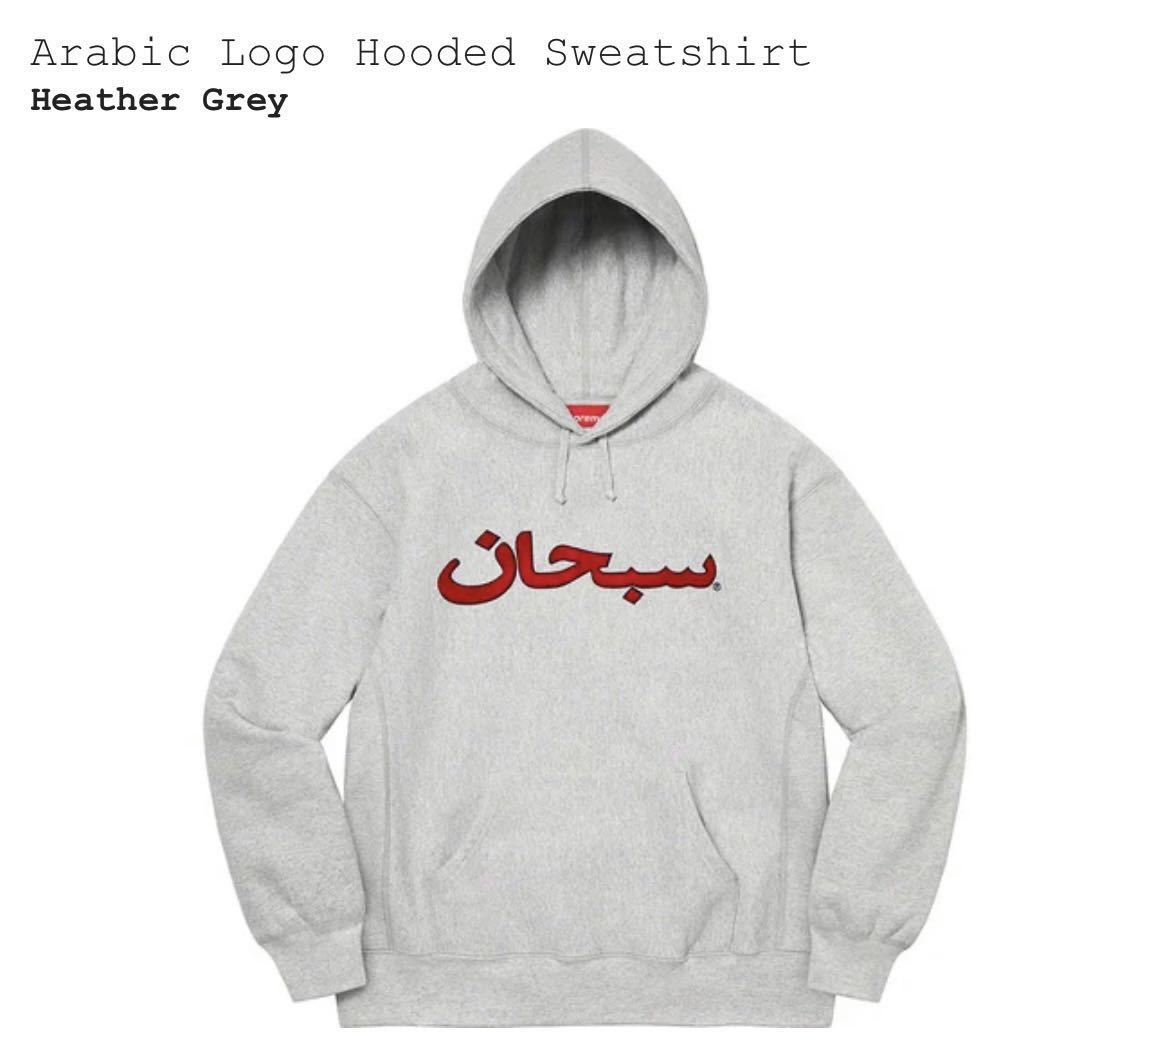 オープニング 大放出セール】 アラビア パーカー 美品 S サイズ グレー Sweatshirt Hooded Logo Arabic 21AW -  パーカー - reachahand.org